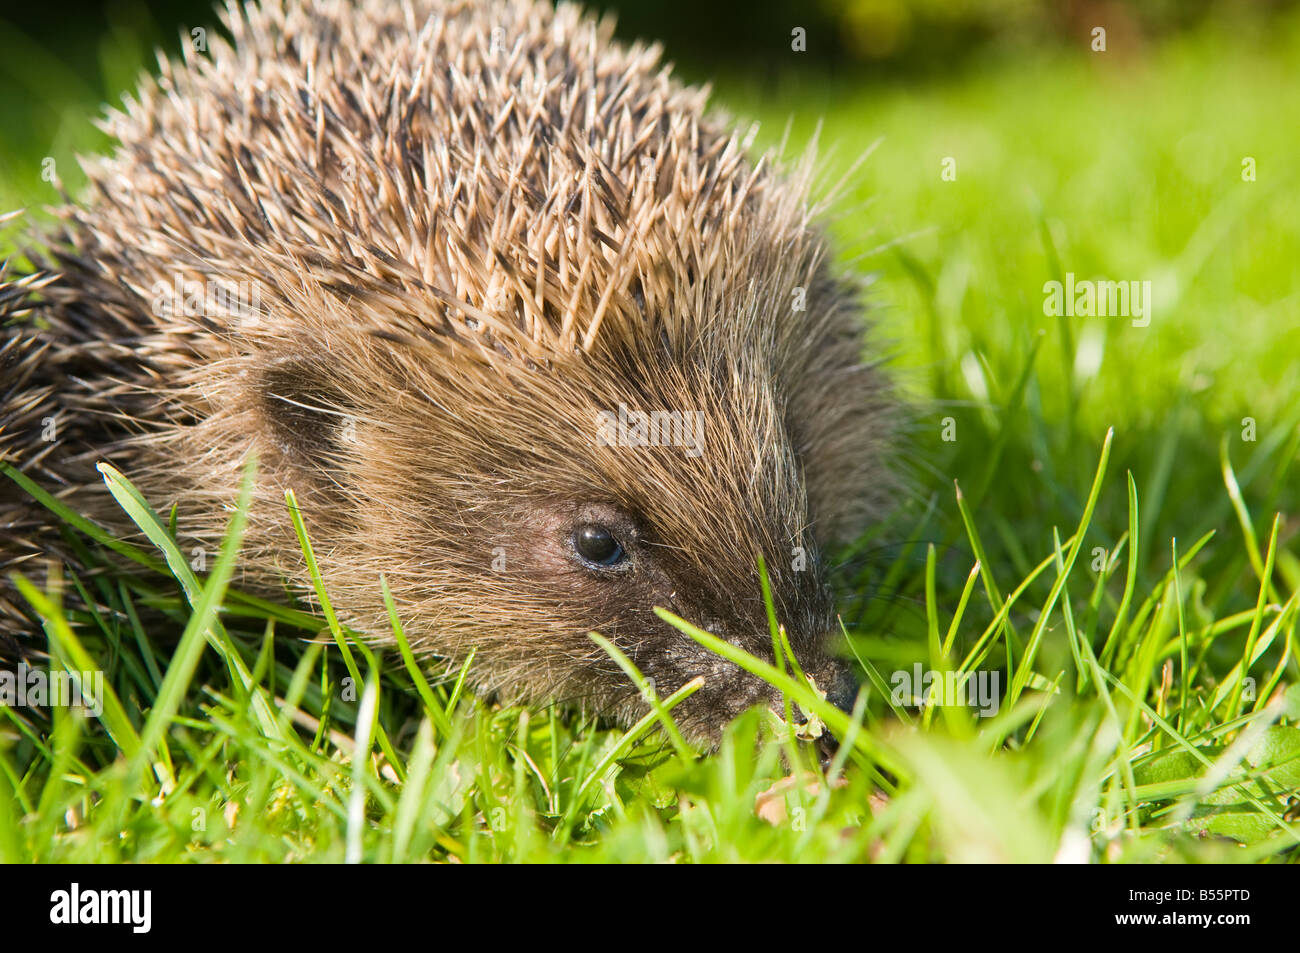 Hedgehog in UK garden Stock Photo